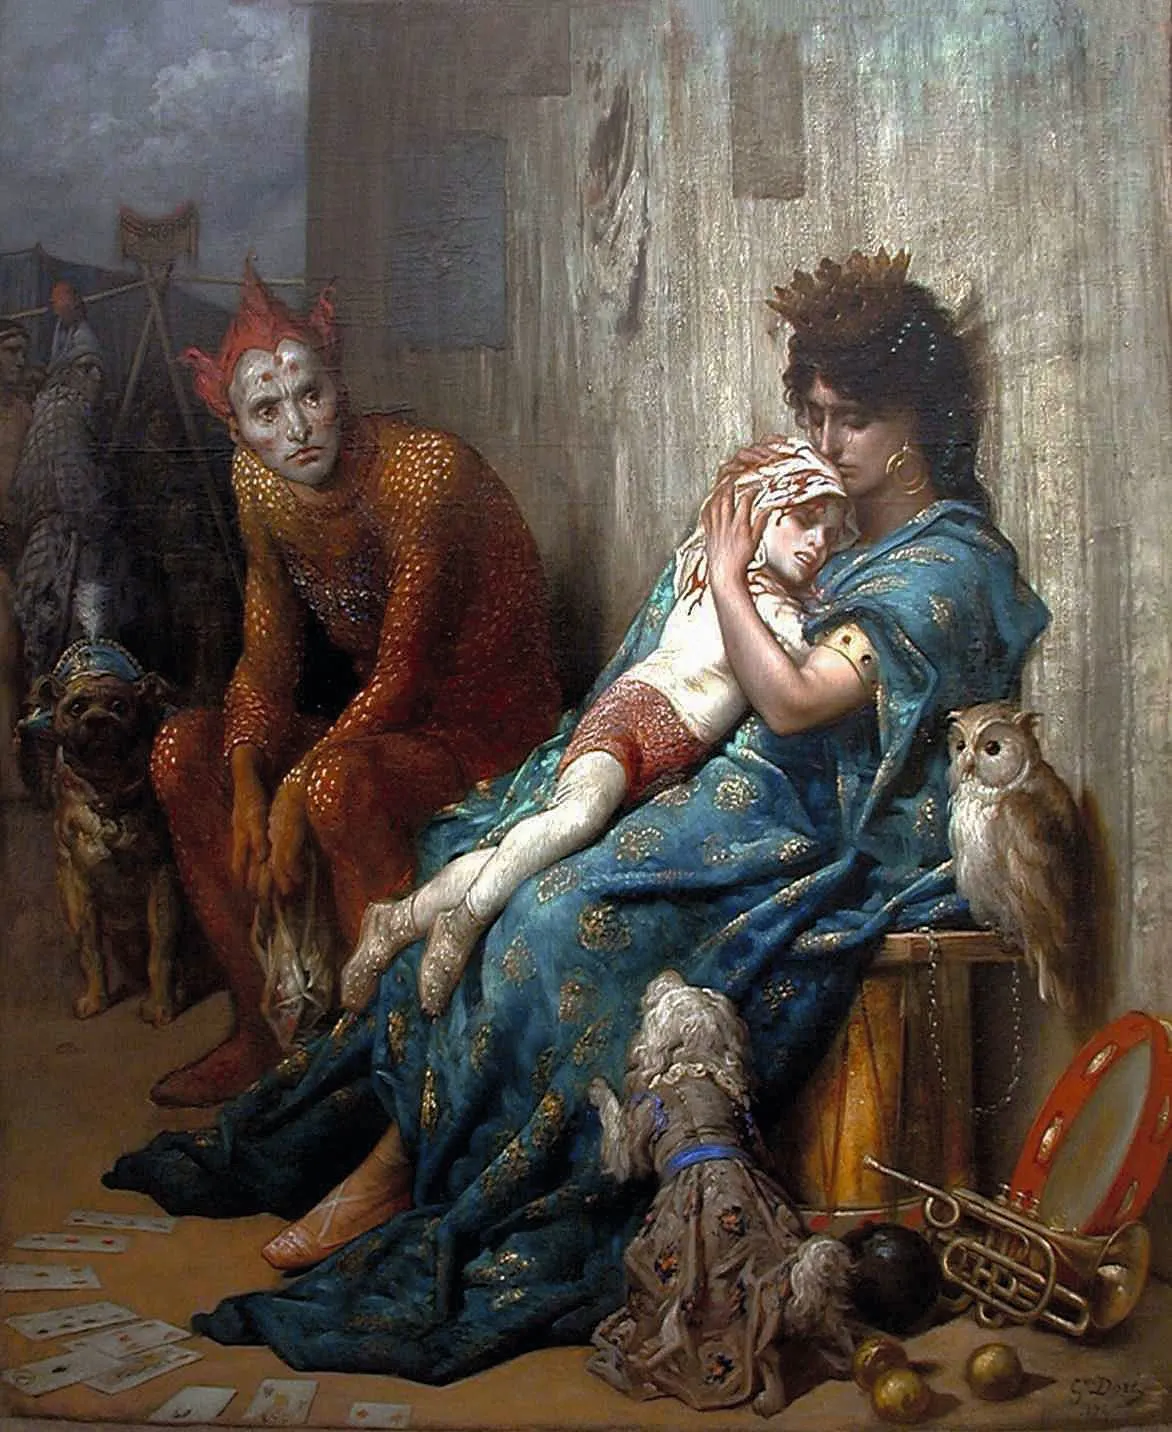 Gustave Doré, Les Saltimbanques, 1874, huile sur toile, musée d'art Roger Quilliot, Clermont-Ferrand.